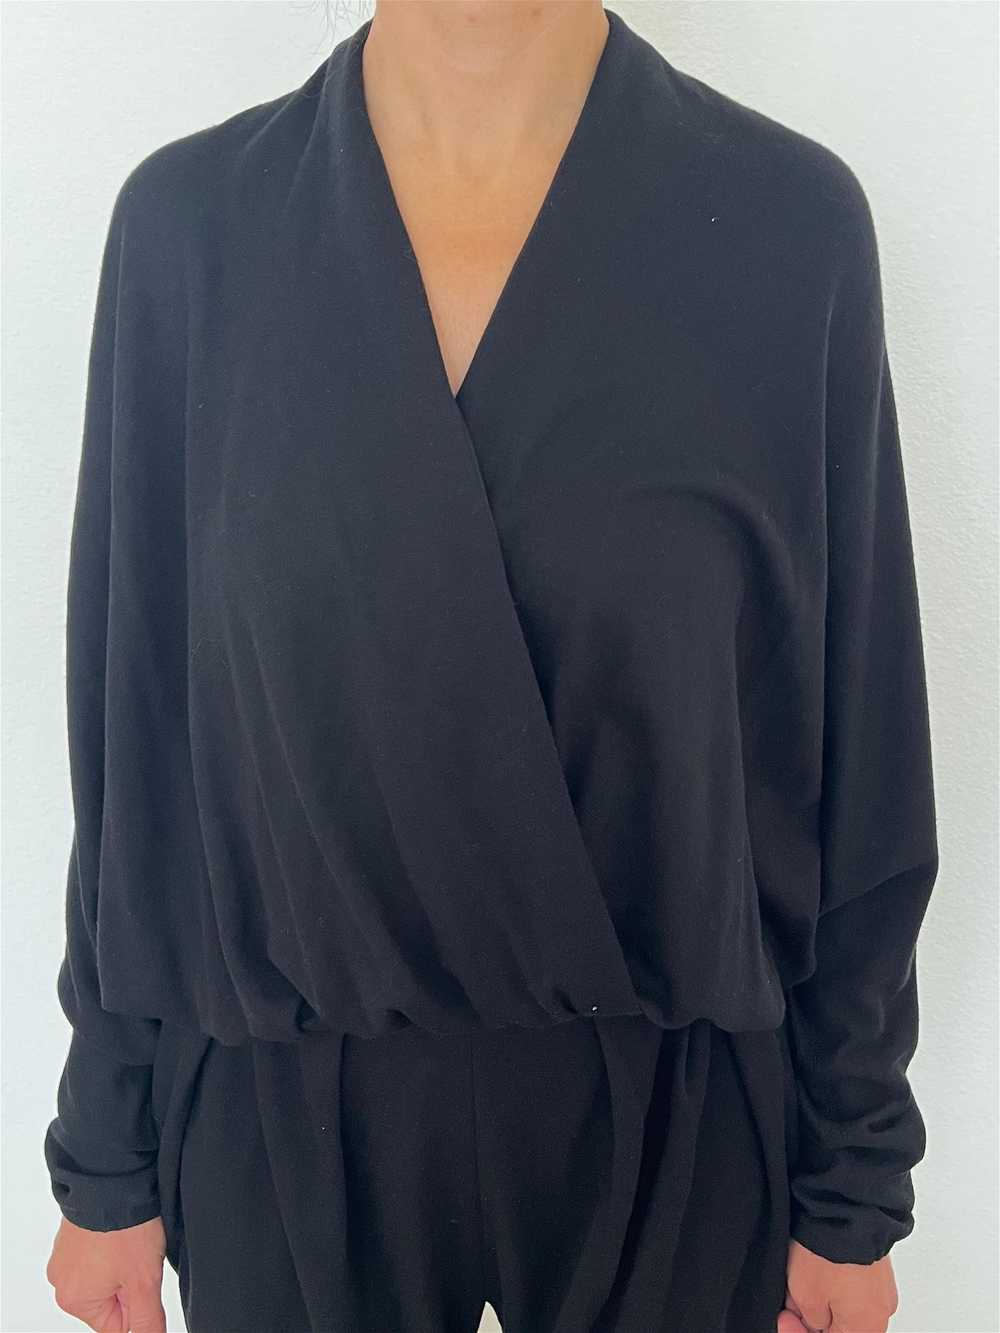 Vintage Lanvin Paris Black Jumpsuit, Size 38 - image 4